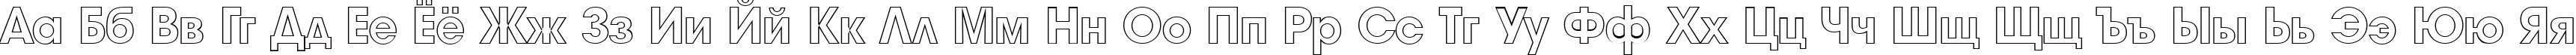 Пример написания русского алфавита шрифтом a_AvanteOtl Heavy